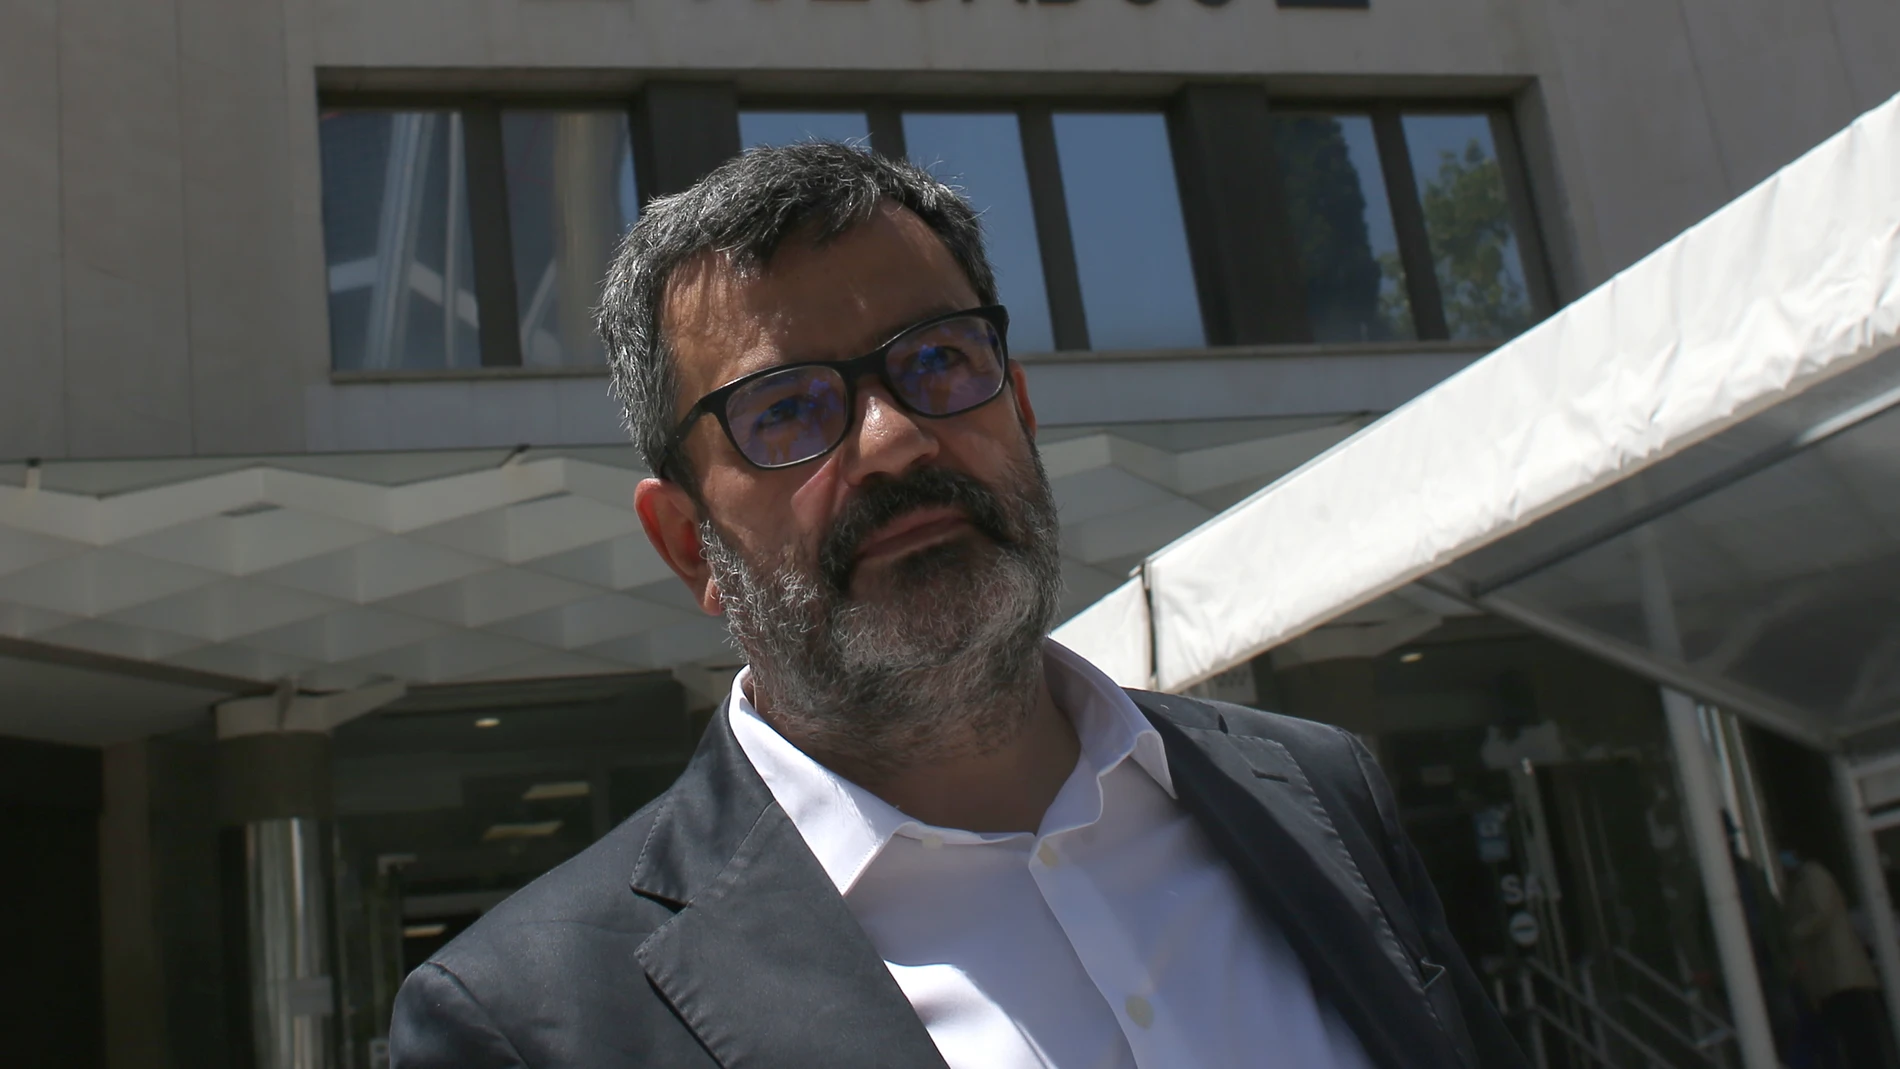 El ex gerente de Podemos Manuel Fernández Alarcón acude a los juzgados de Plaza de Castilla el pasado 21 de mayo para declarar como testigo